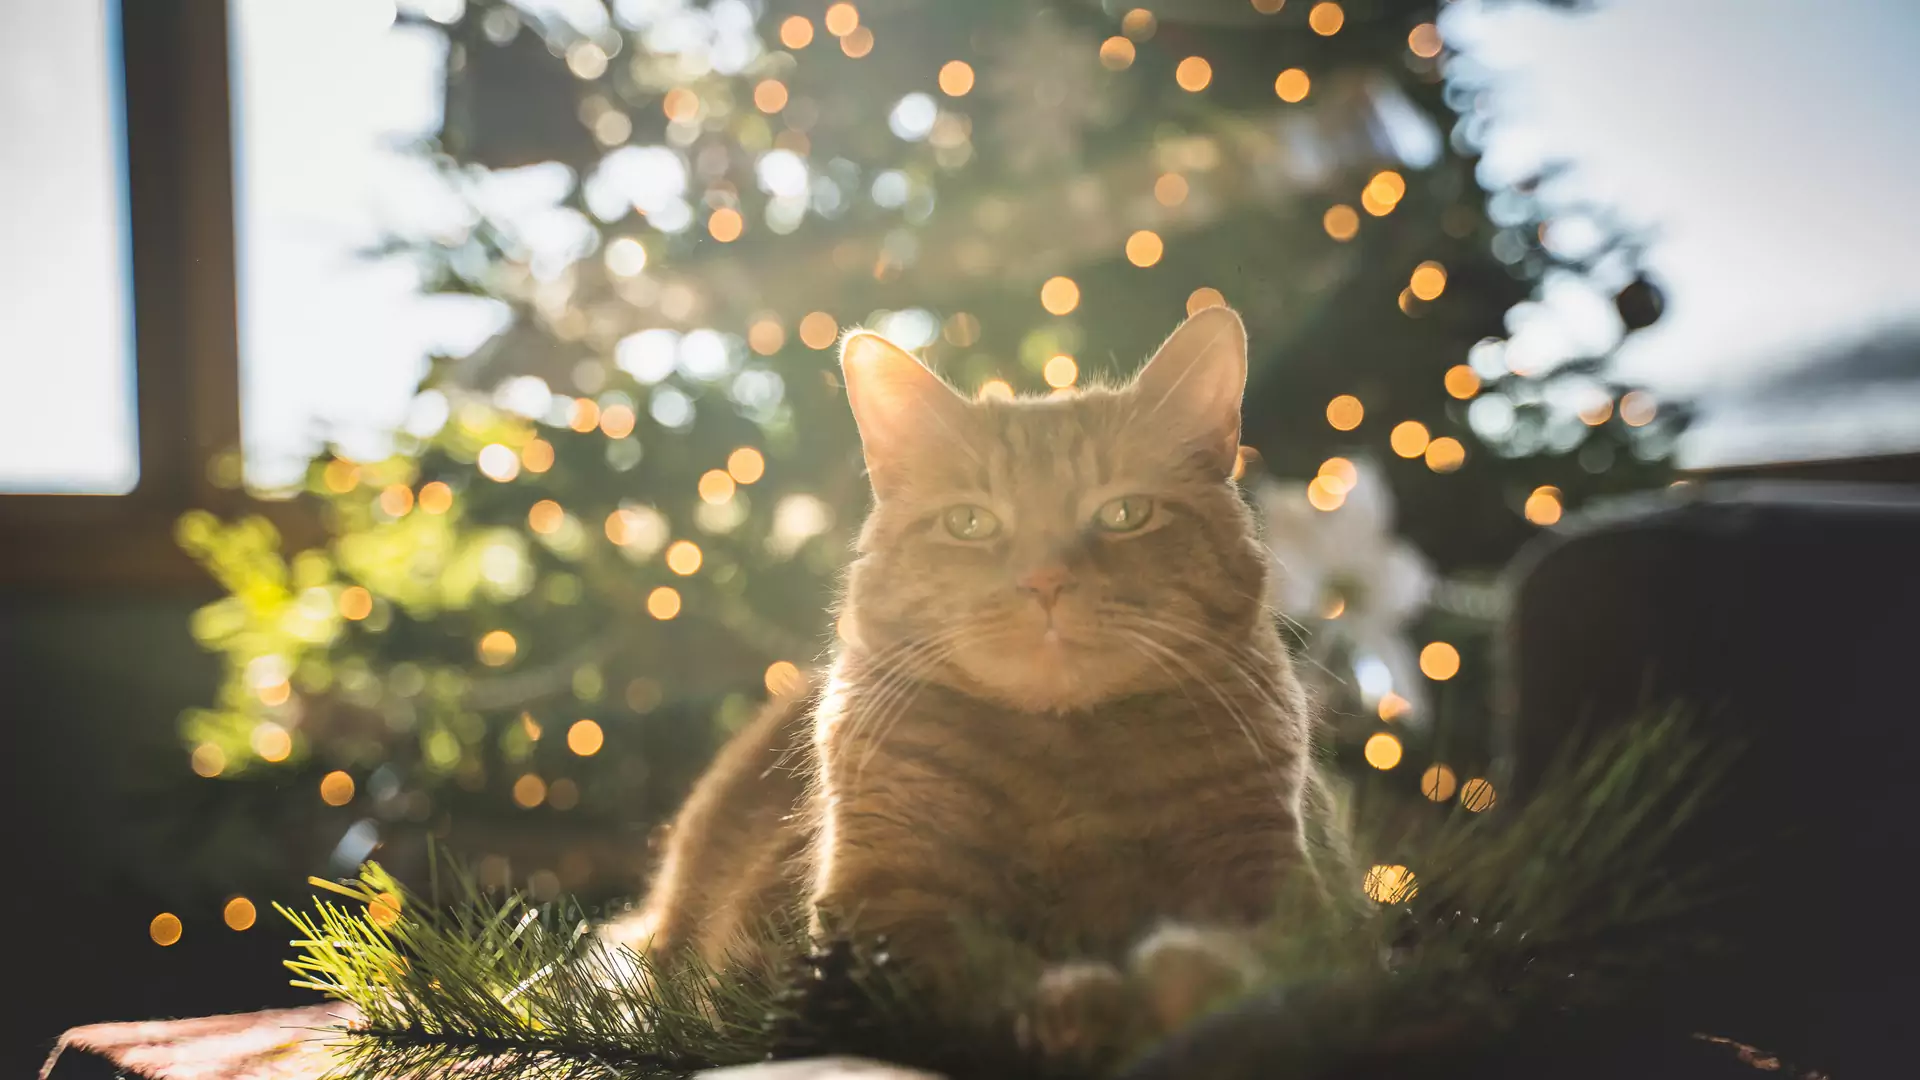 Uważaj na te świąteczne dekoracje, jeśli masz kota. Bywają równie piękne, co niebezpieczne